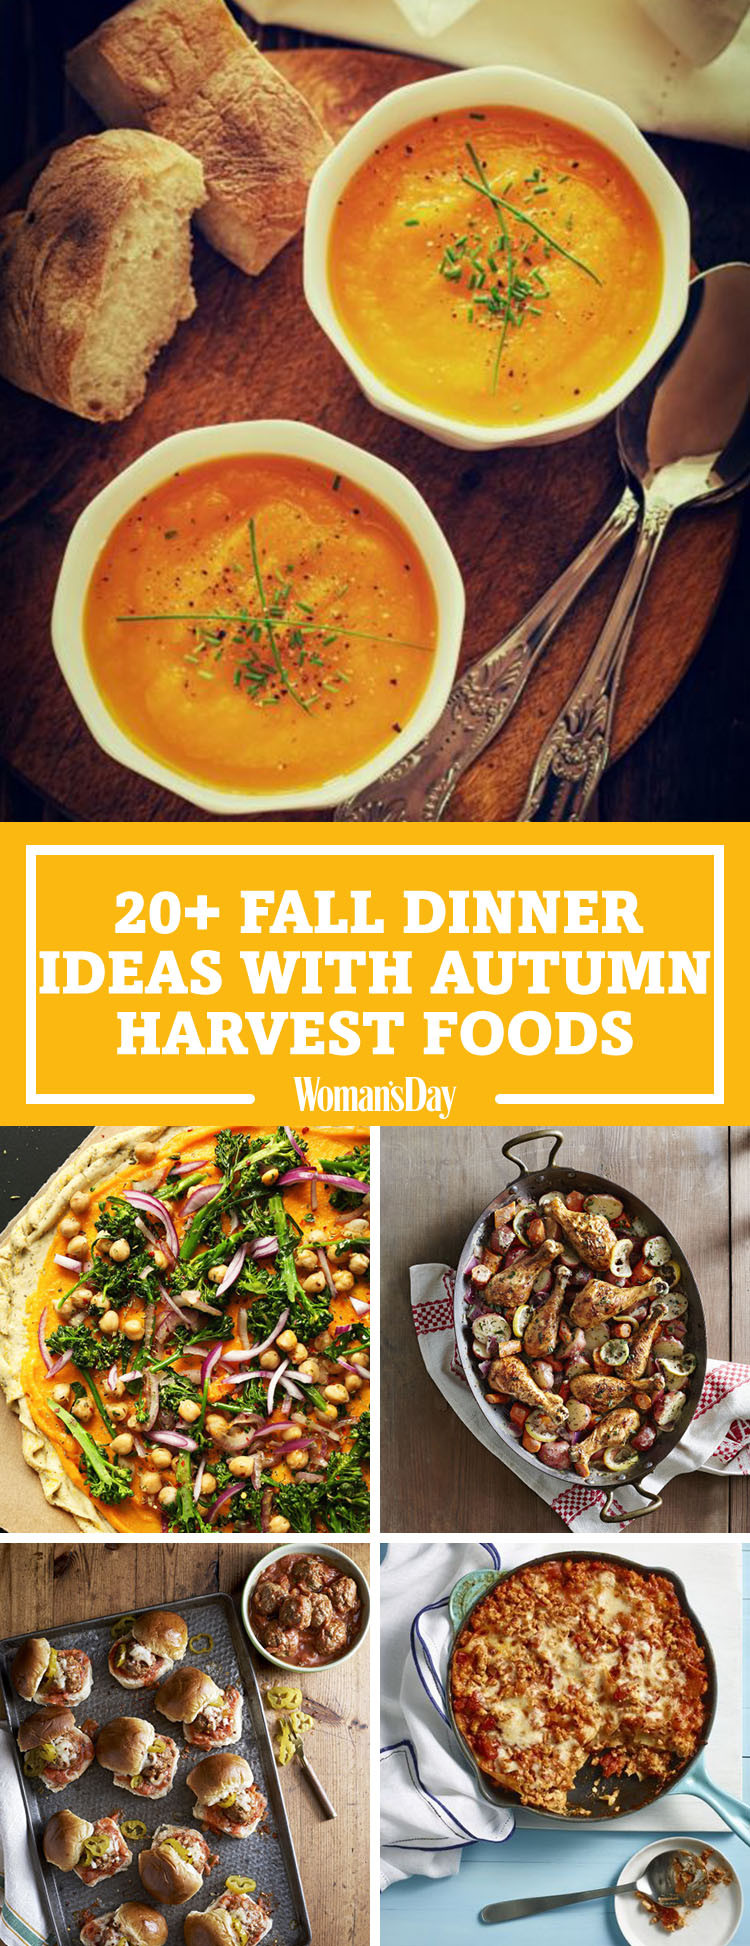 Fall Recipes For Dinner
 26 Easy Fall Dinner Ideas Best Dinner Recipes for Autumn